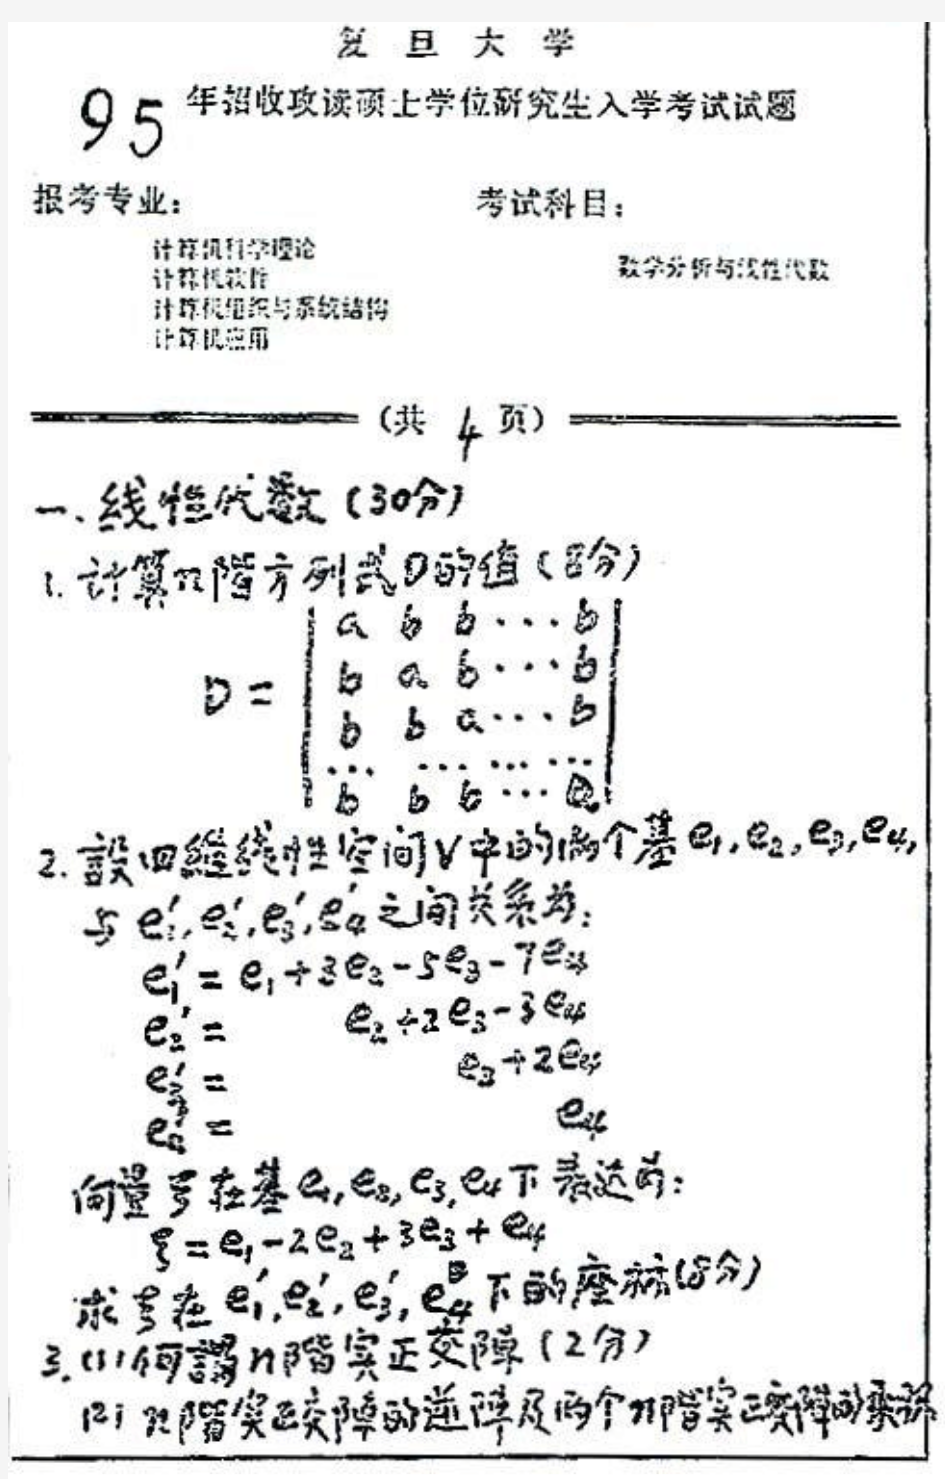 1995年复旦大学数学分析与线性代数考研试题